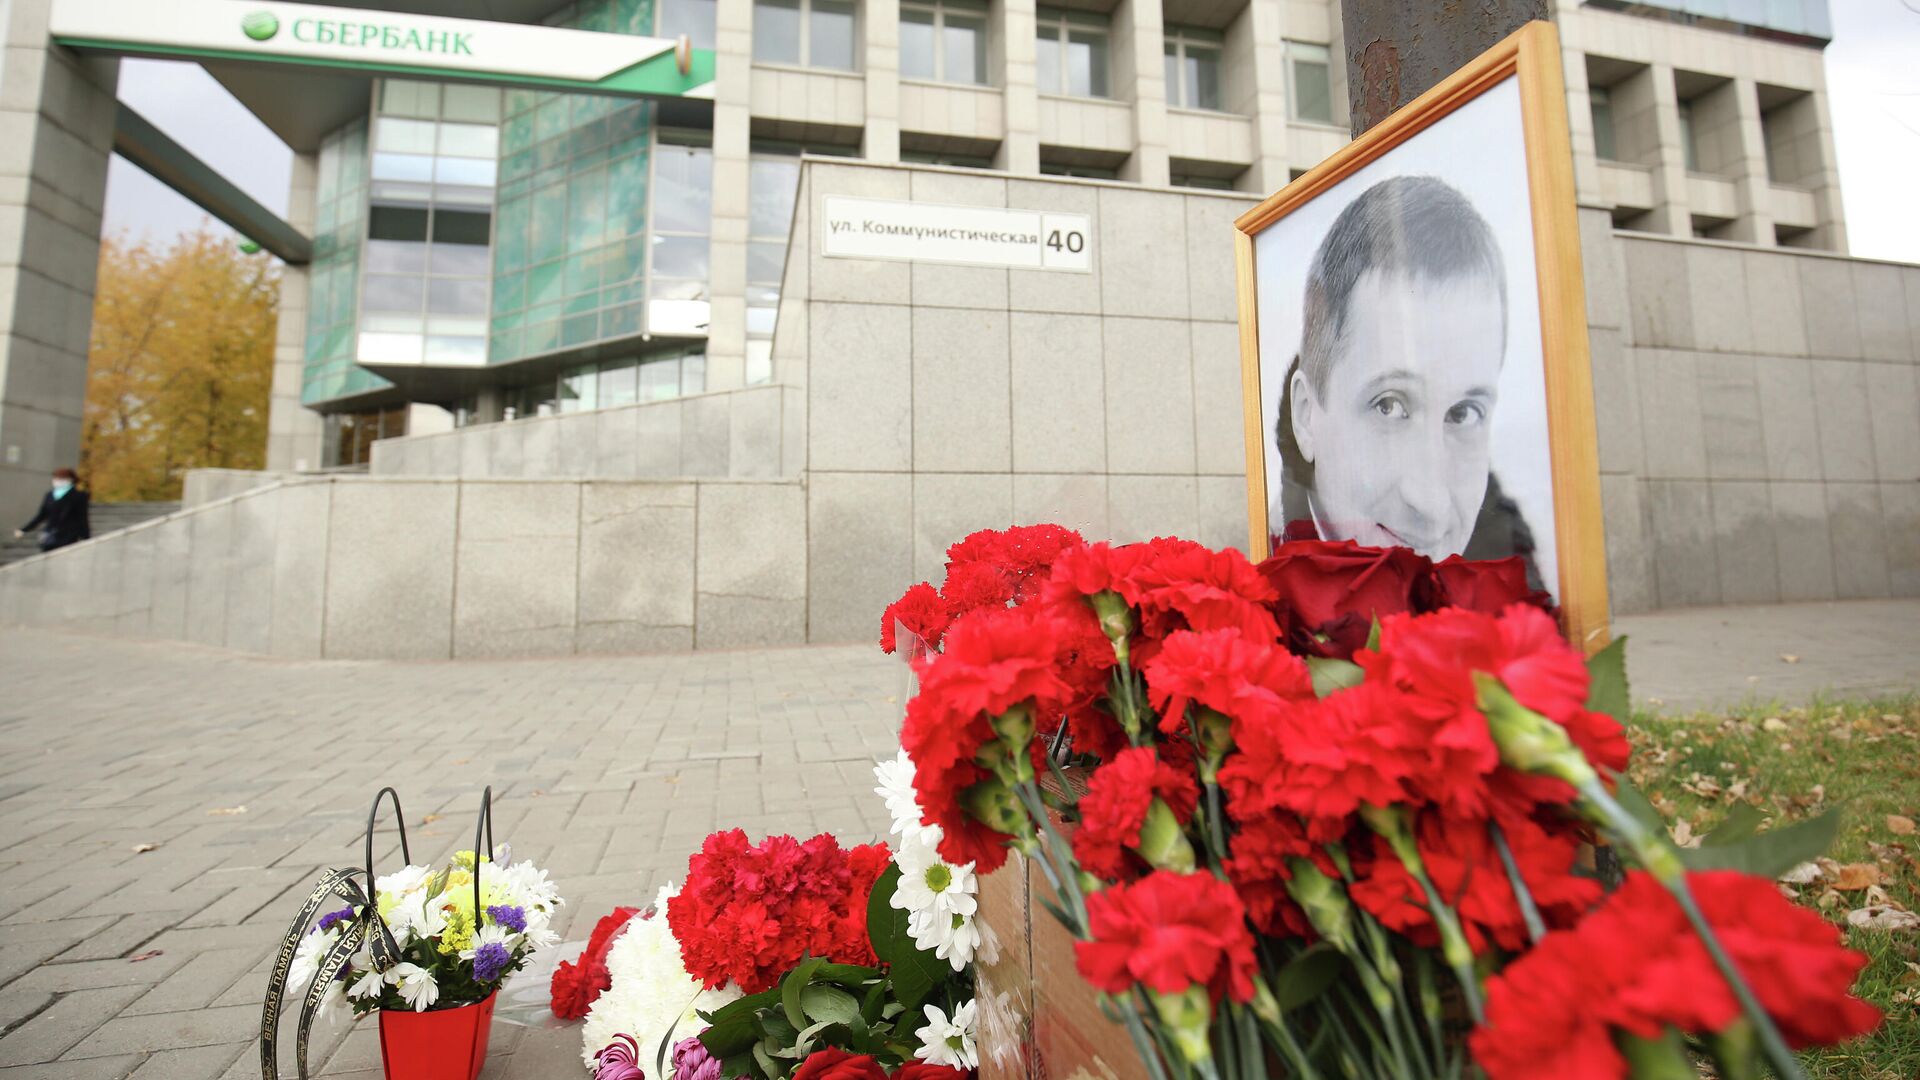 Цветы в память о погибшем Романе Гребенюке на улице Коммунистической в Волгограде - РИА Новости, 1920, 03.11.2020